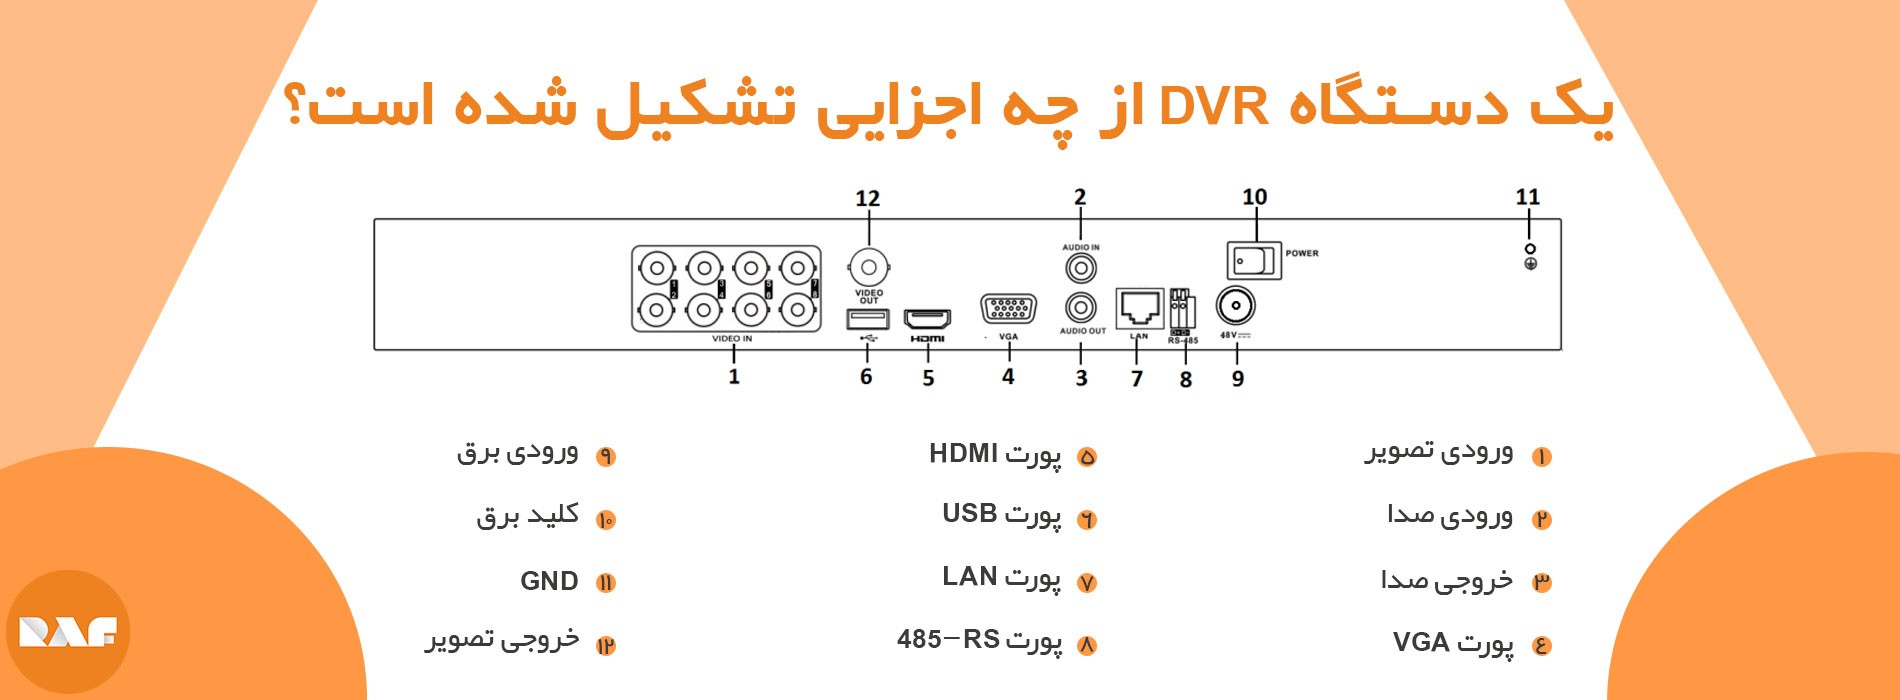 یک دستگاه DVR از چه اجزایی تشکیل شده است؟